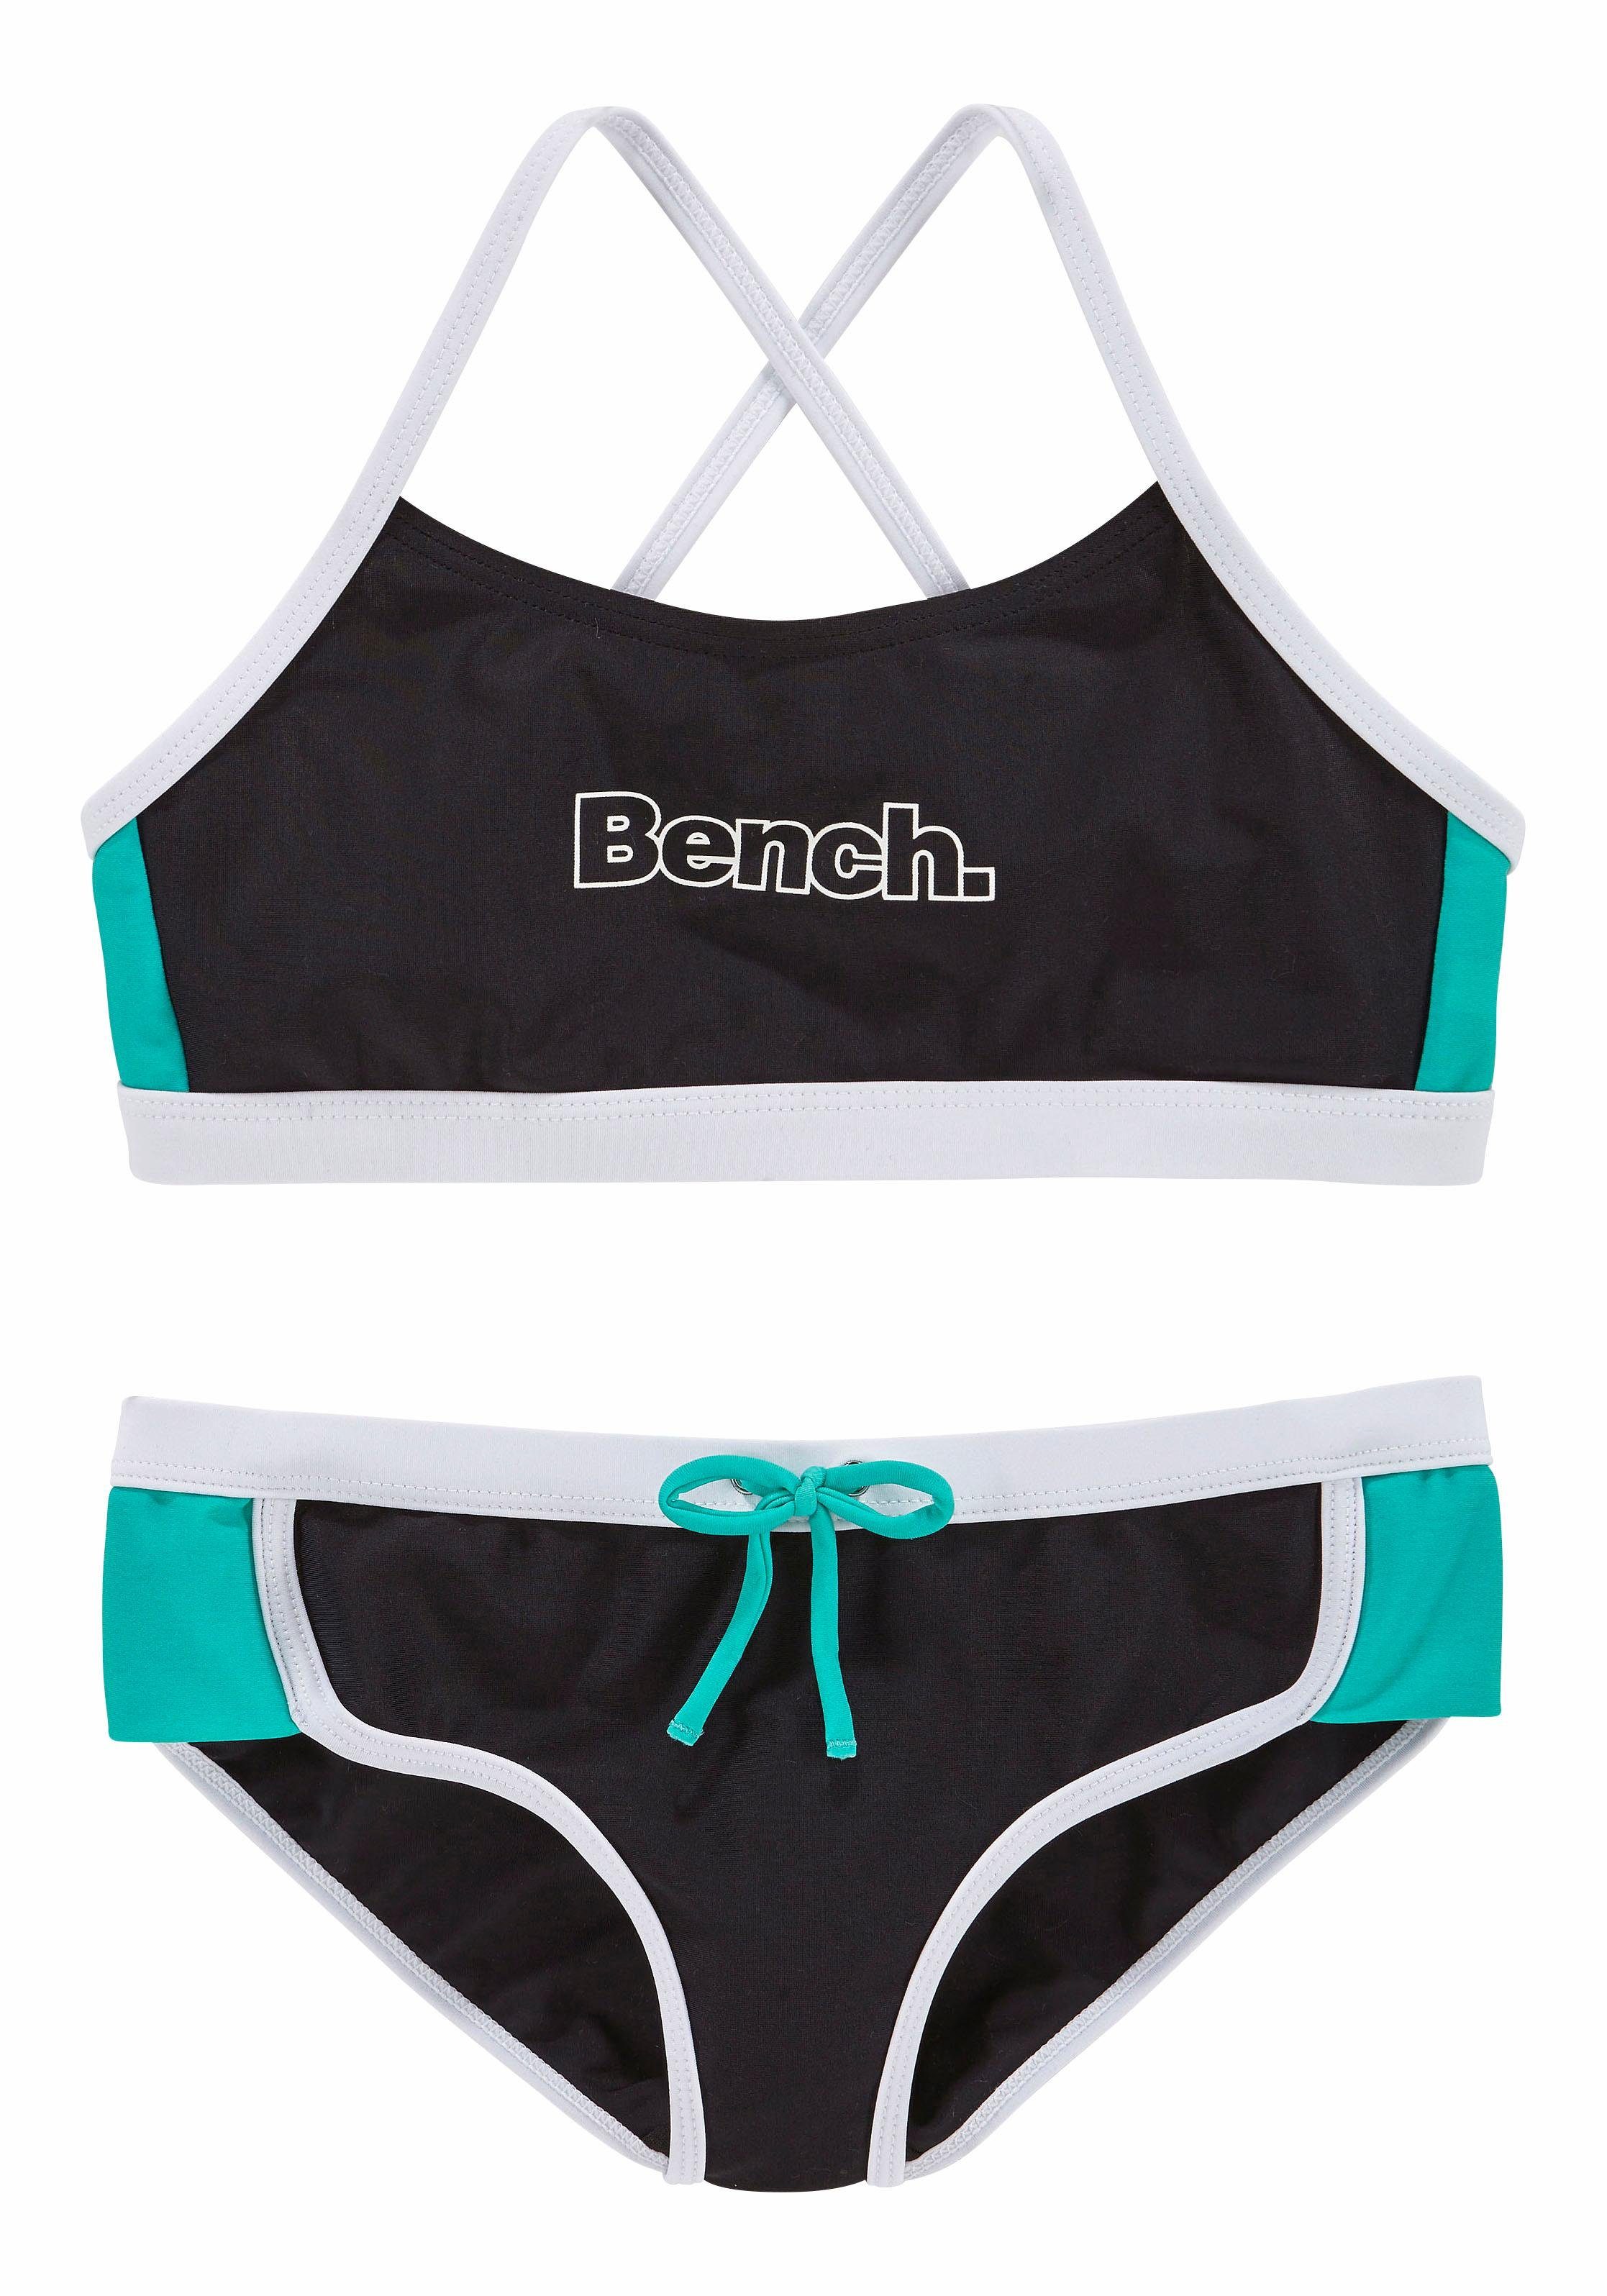 Bustier-Bikini Kontrastdetails Bench. mit